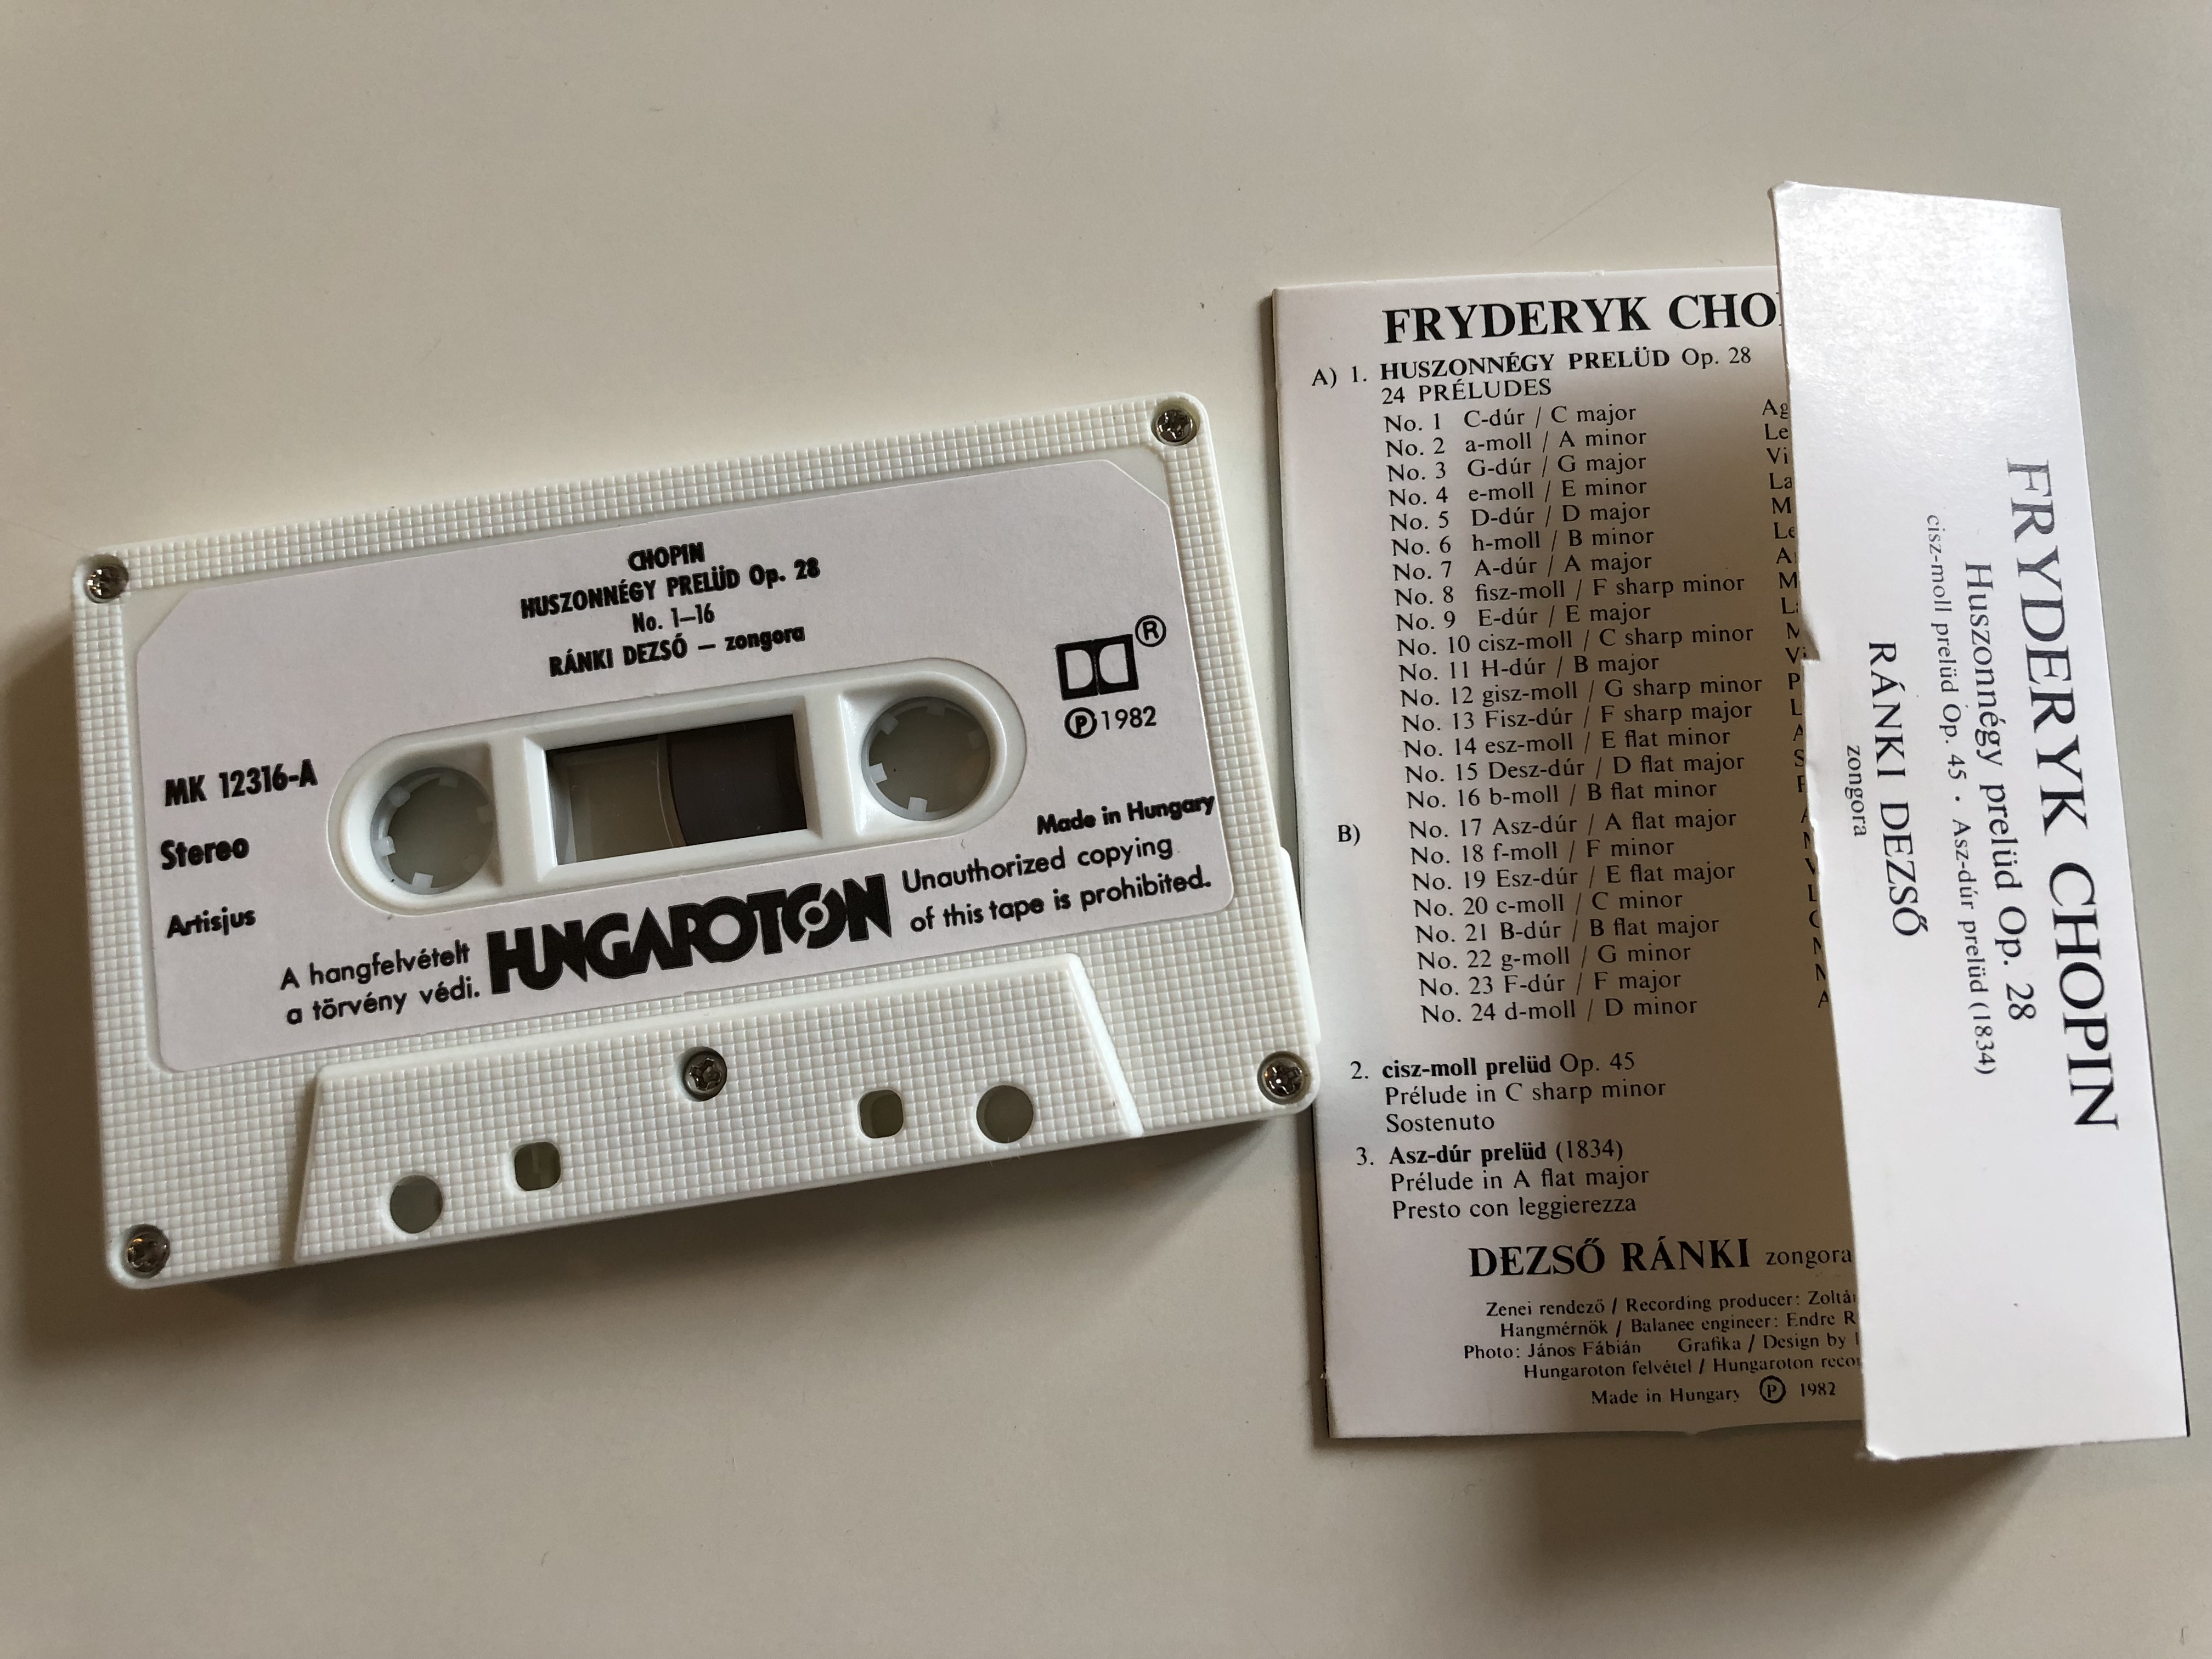 dezs-r-nki-chopin-preludes-hungaroton-cassette-stereo-mk-12316-2-.jpg